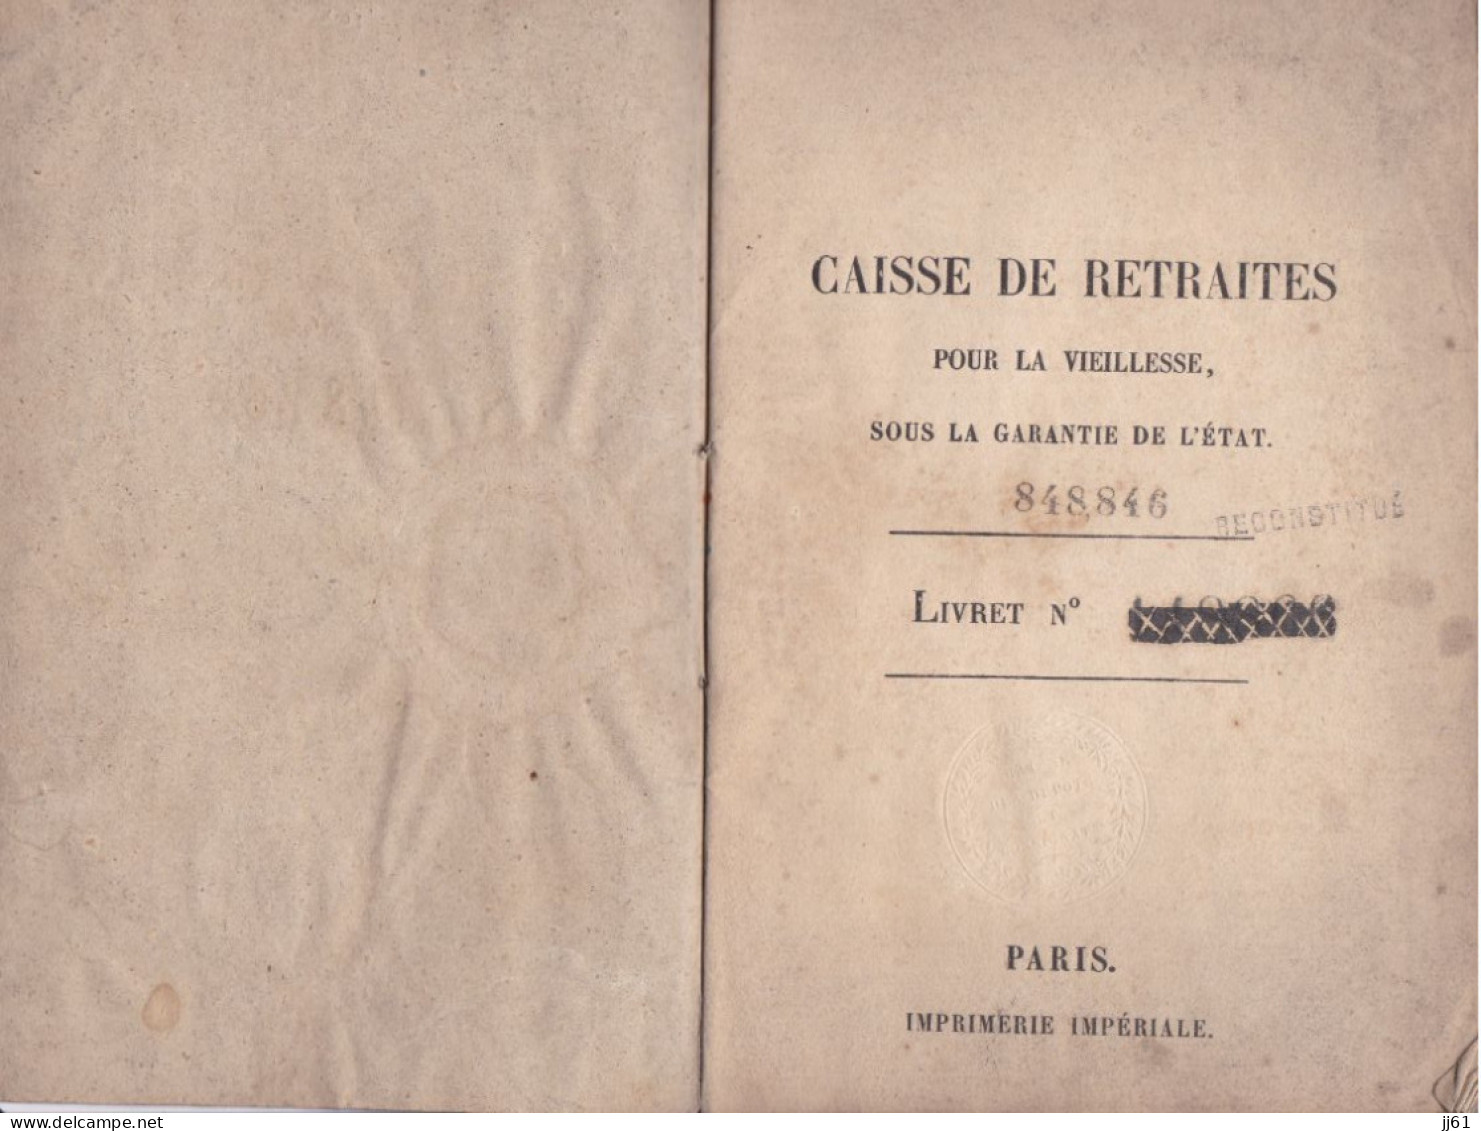 CHATEAUROUX ANCIEN LIVRET DE LA CAISSE DE RETRAITE VIEILLESSE ANNEE 1842 A M BARISSAT JACQUES A BRENAT PUY DE DOME - Bank En Verzekering